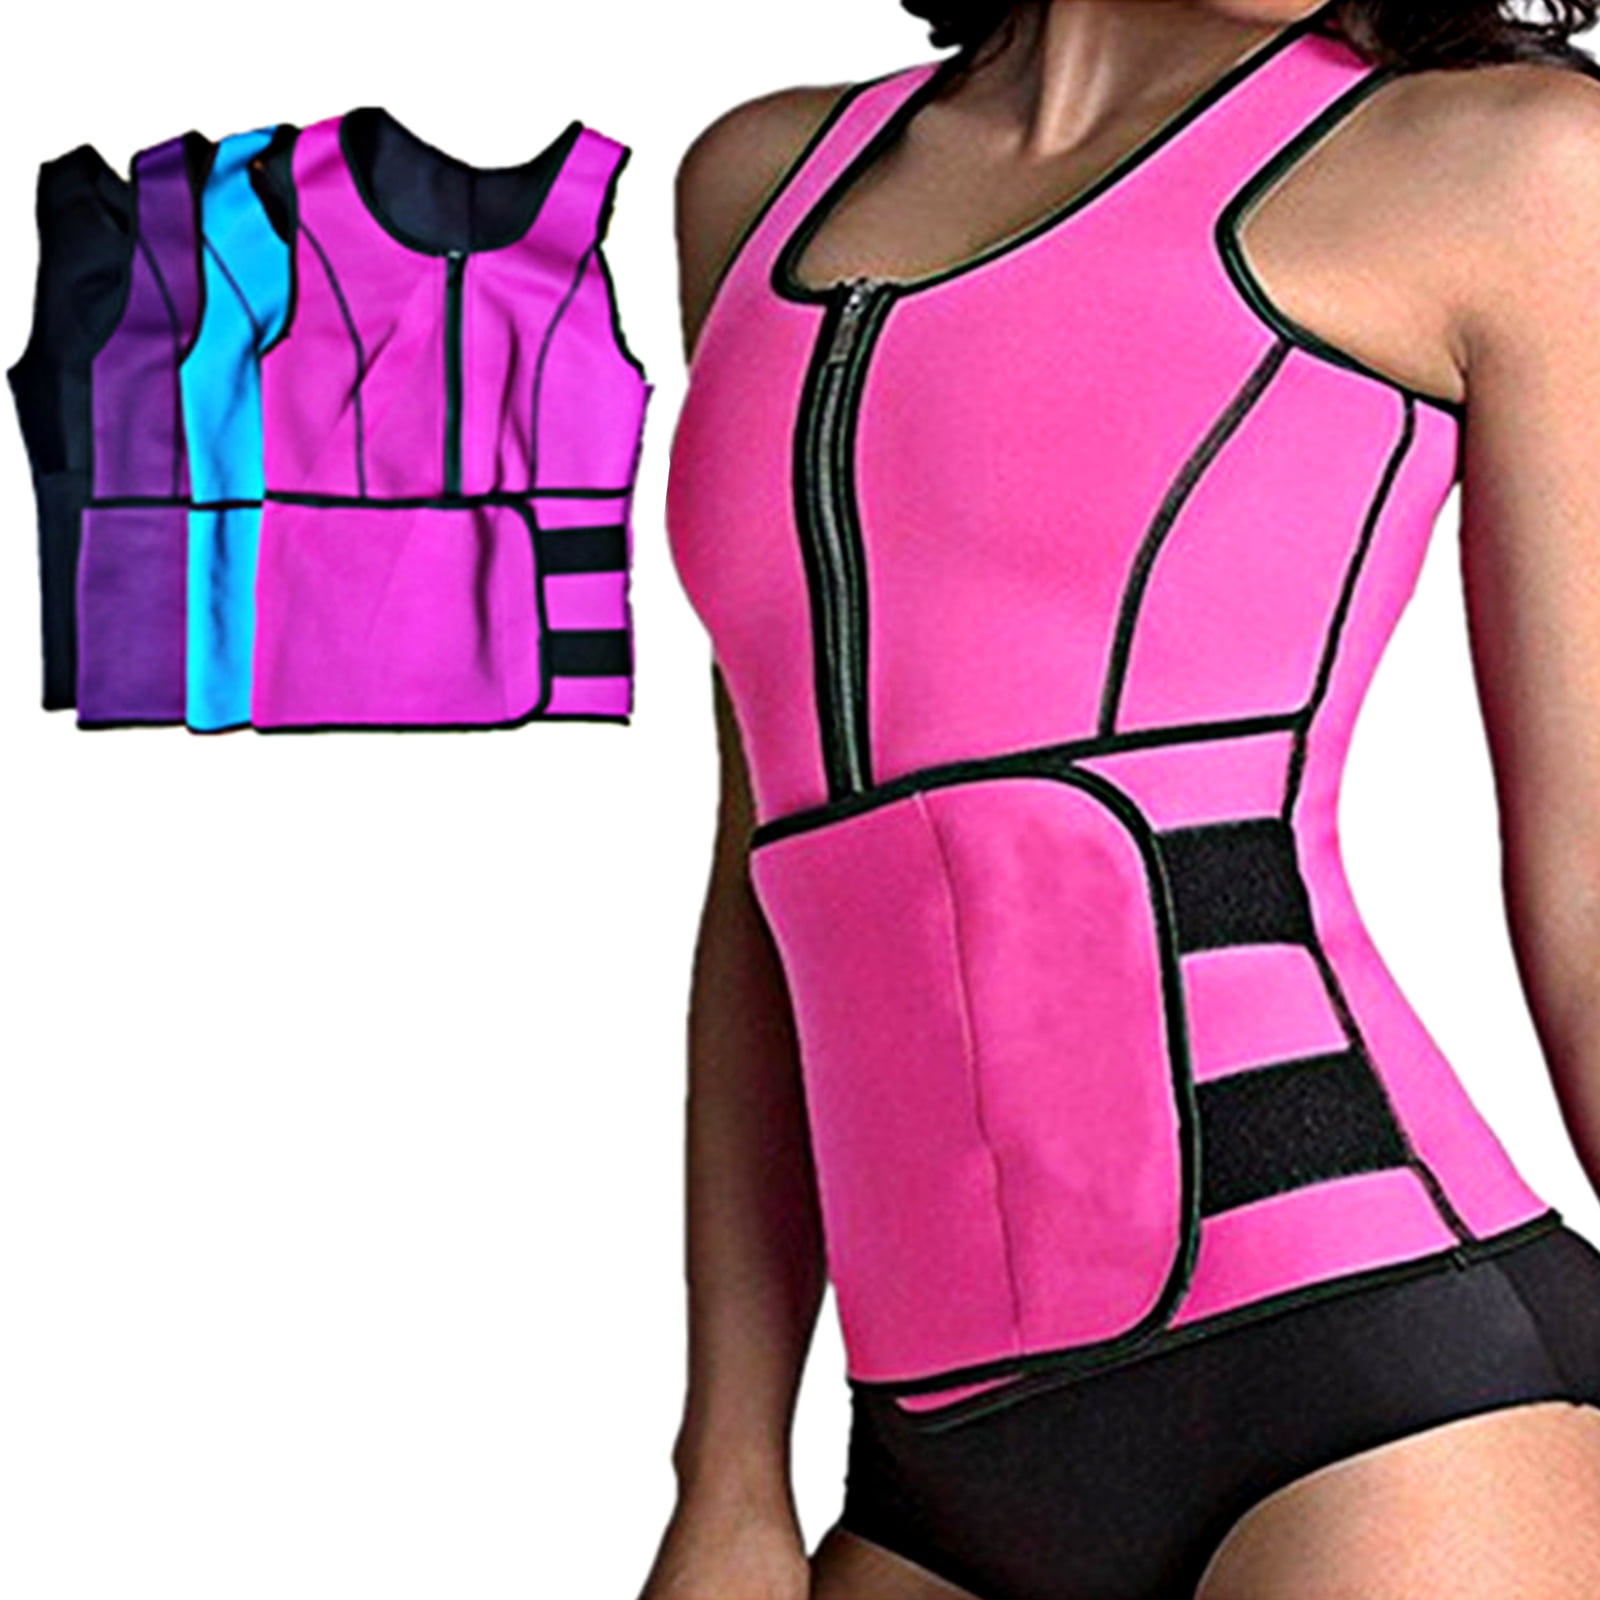 Details about   US Women Waist Trainer Body Shaper Vest Gym Adjustable Sauna Sweat Slimming Belt 